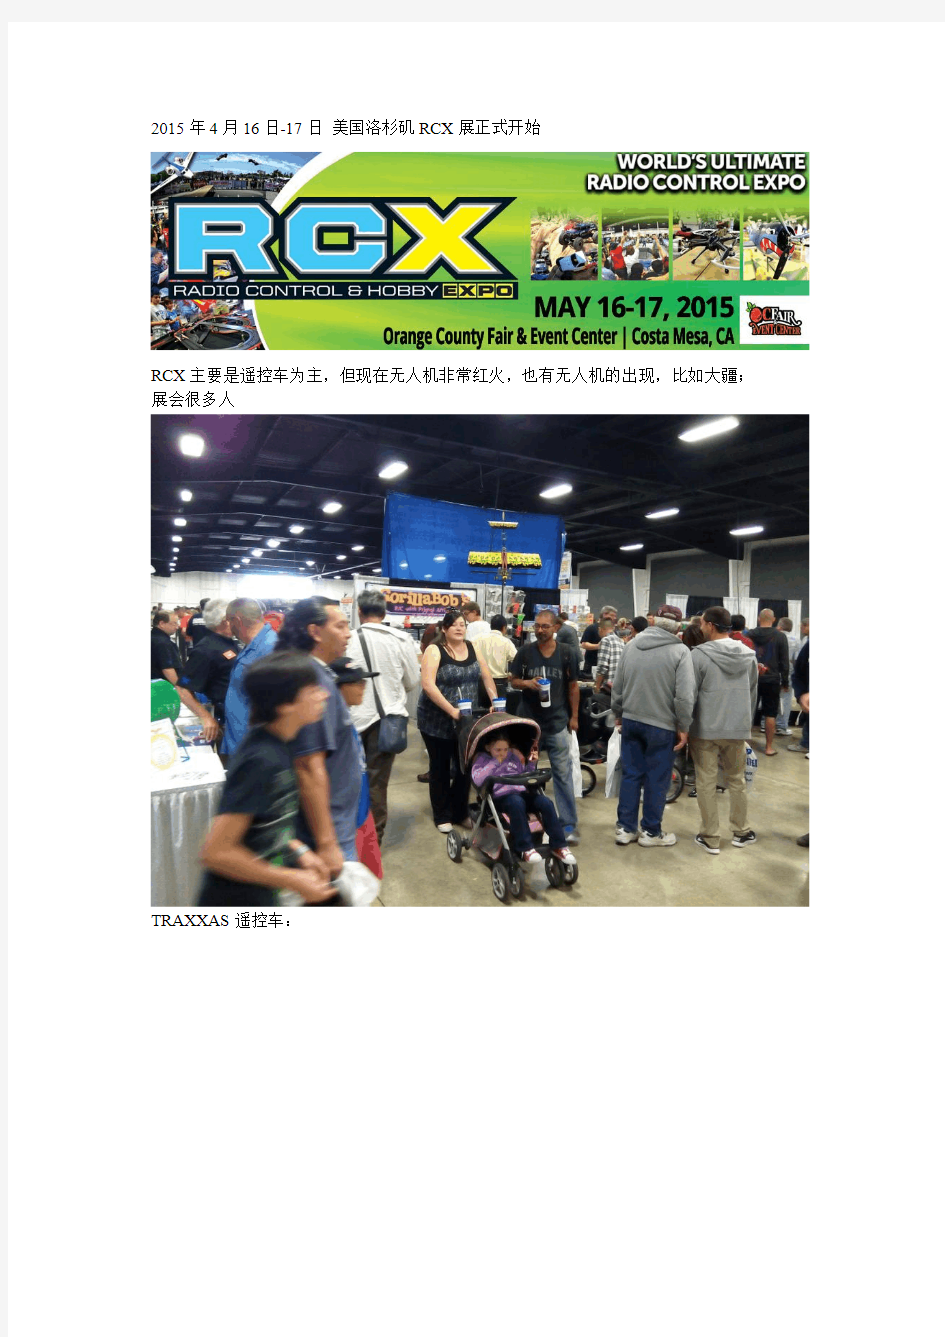 2015年洛杉矶RCX遥控车展览会 DJI大疆小悟和S1000飞行